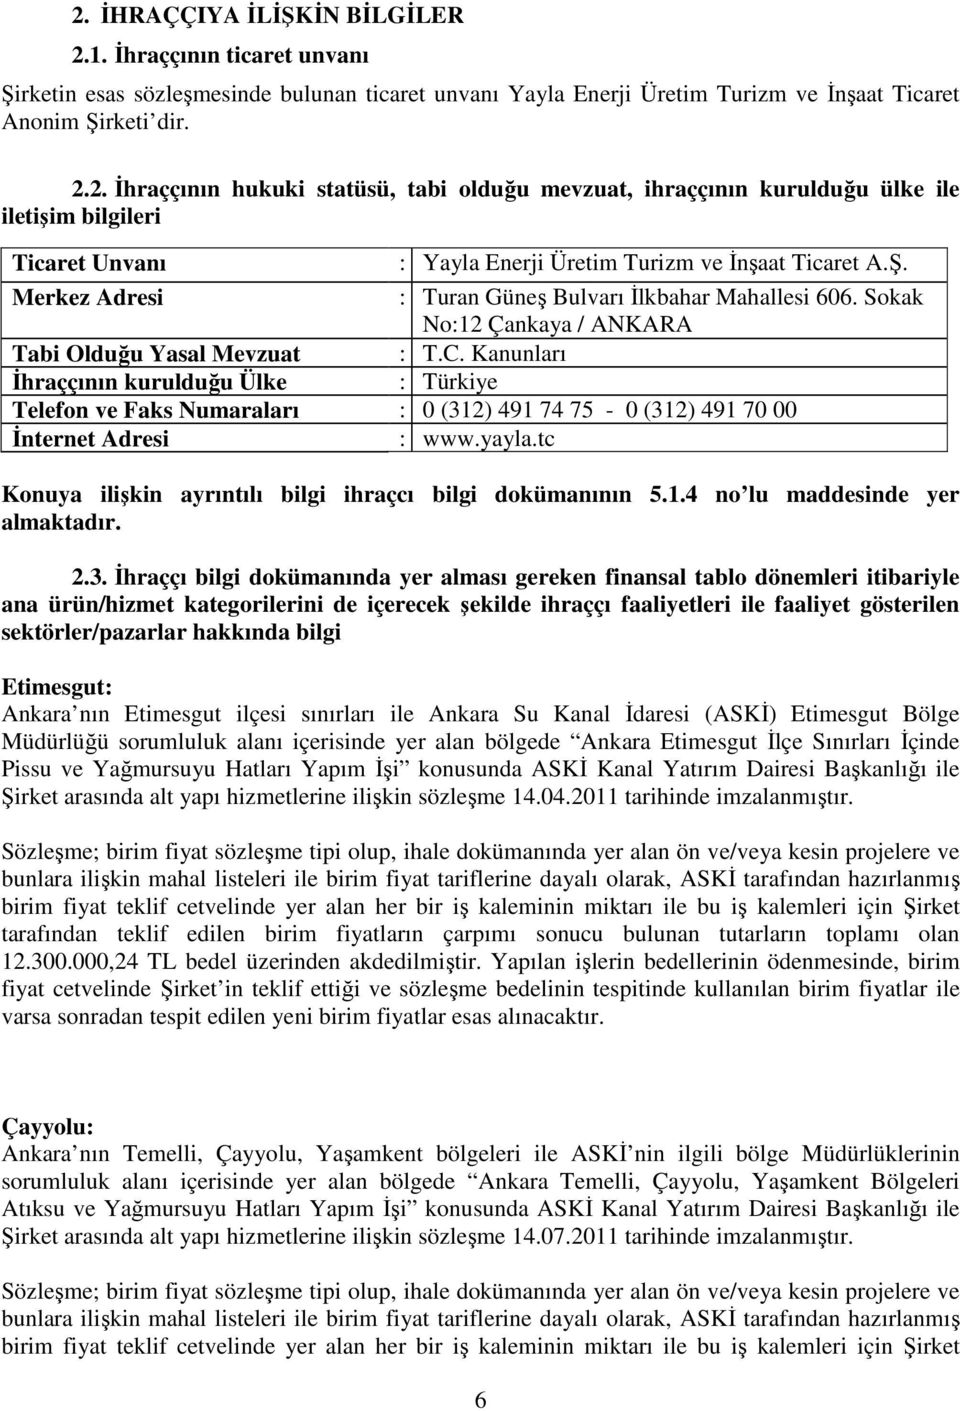 Kanunları : Türkiye Tabi Olduğu Yasal Mevzuat İhraççının kurulduğu Ülke Telefon ve Faks Numaraları : 0 (312) 491 74 75-0 (312) 491 70 00 İnternet Adresi : www.yayla.